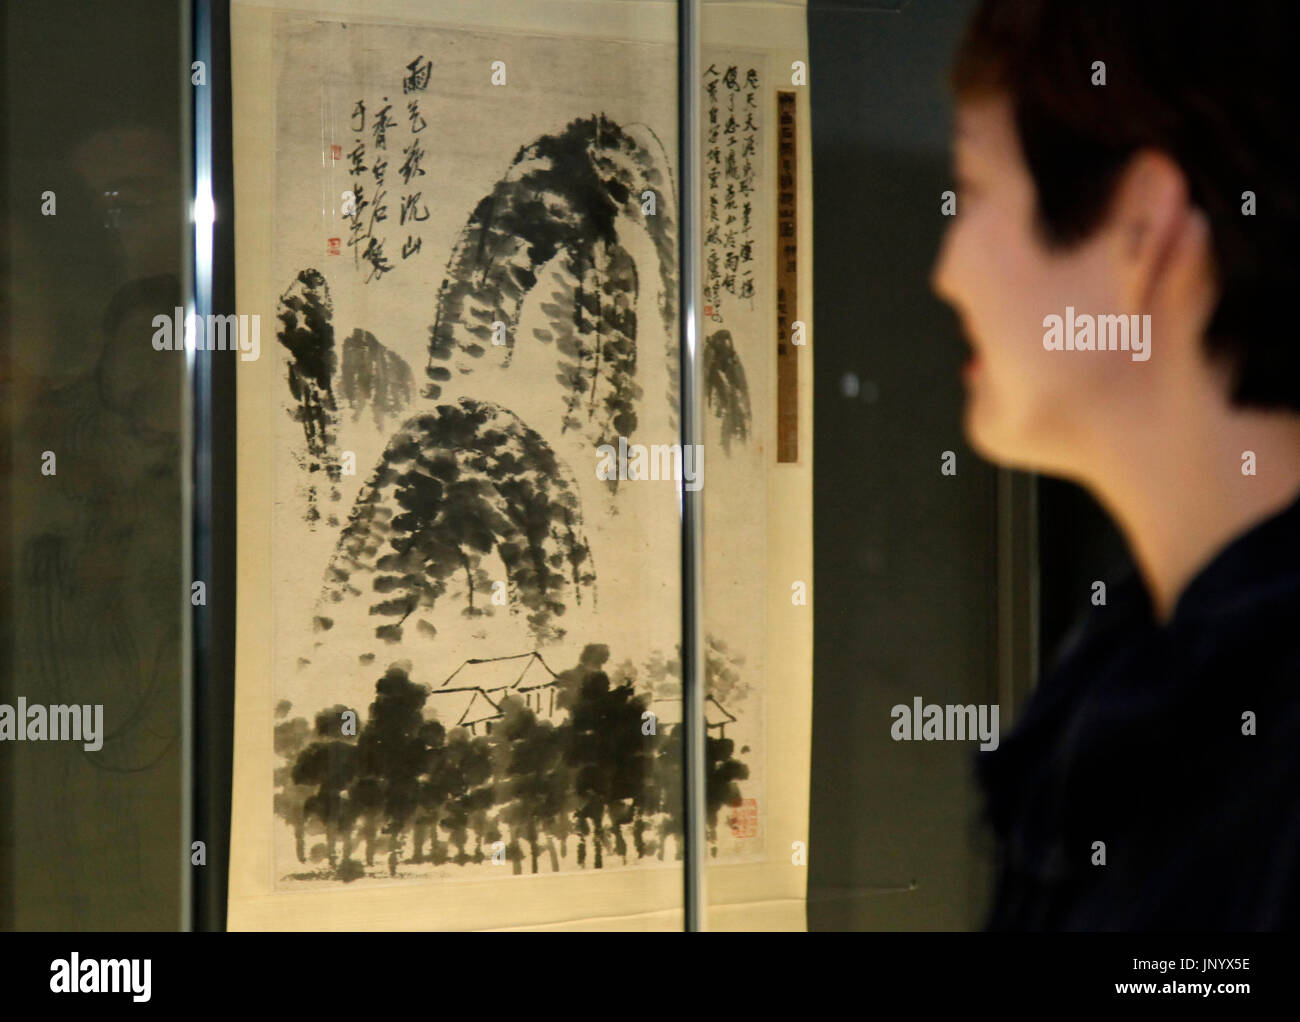 Séoul, Corée du Sud. 31 juillet, 2017. Un visiteur regarde les œuvres de l'artiste chinois Qi Baishi lors d'une exposition à Séoul, Corée du Sud, le 31 juillet 2017. Les œuvres de Qi Baishi, qui sont recueillies par le Hunan Provincial Museum, sont exposées à Séoul pour la première fois. Cet établissement de crédit : Yao/Xinhua/Alamy Live News Banque D'Images